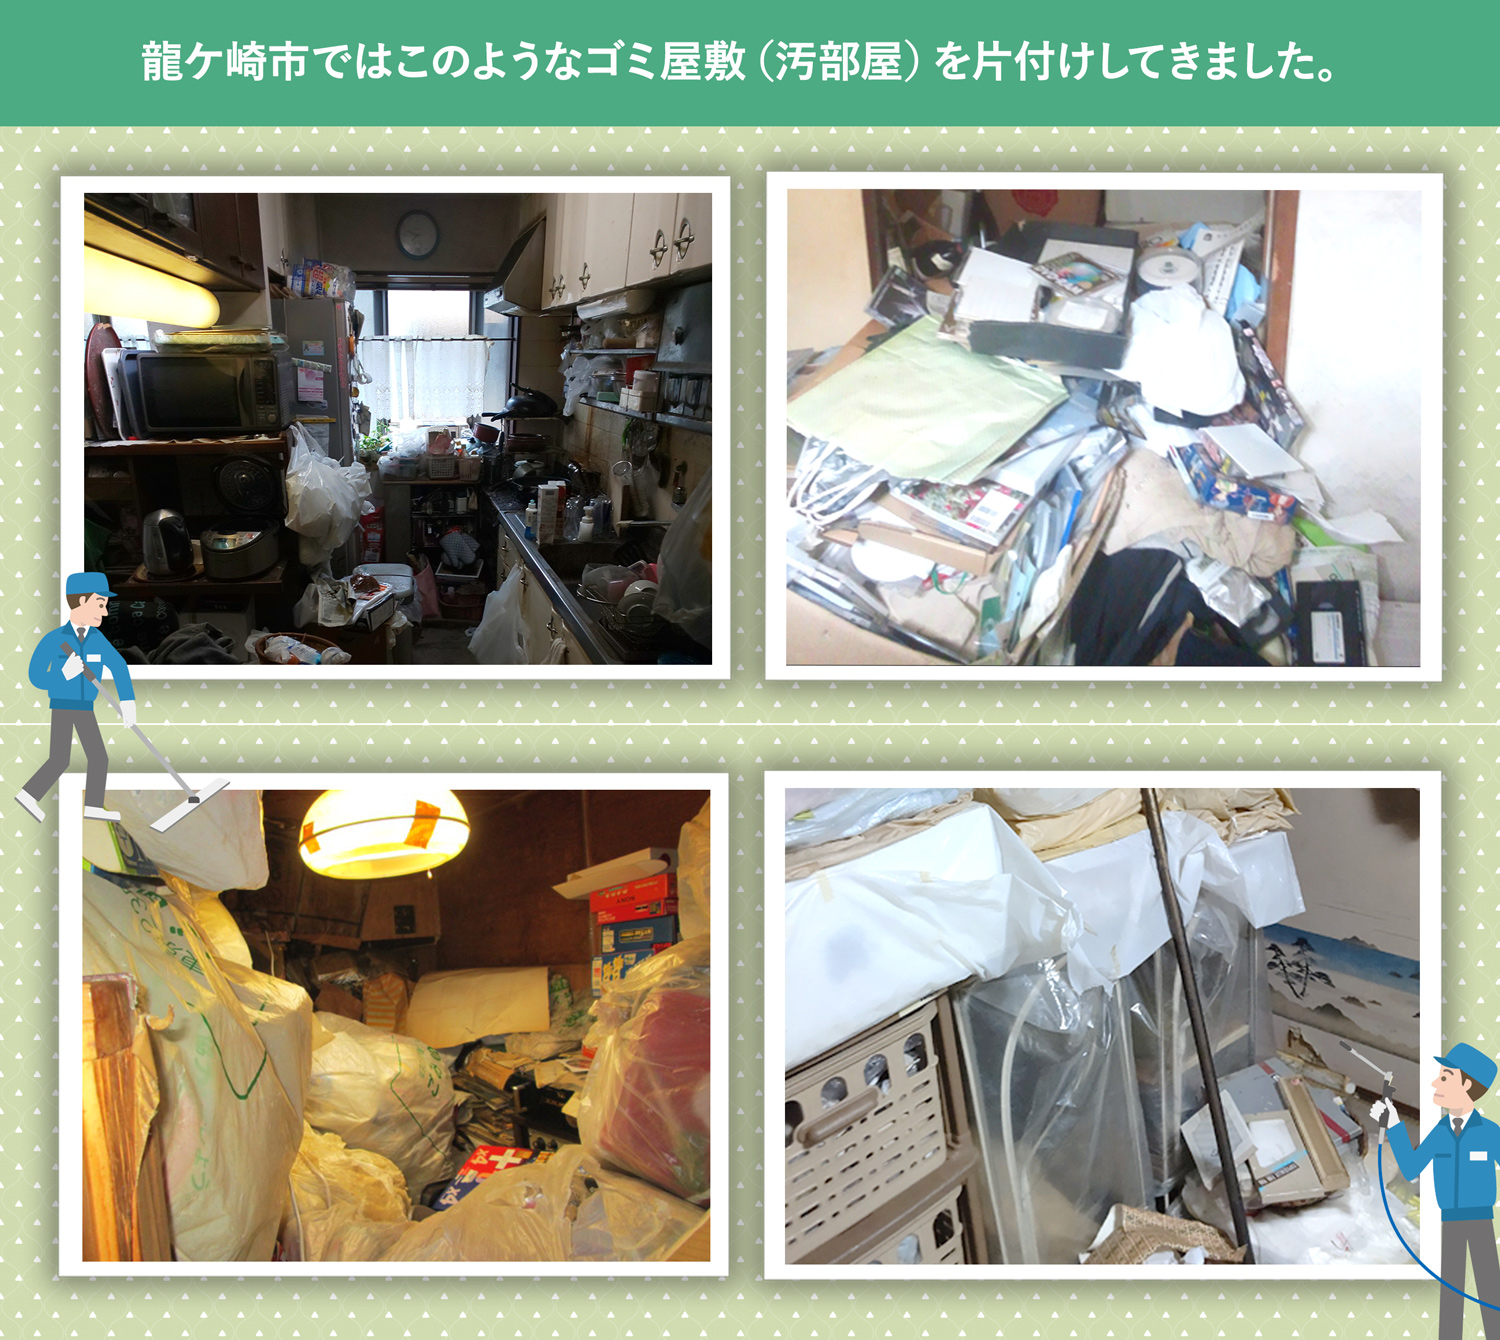 龍ケ崎市で行ったで行ったごみ屋敷・汚部屋の片付けの一例